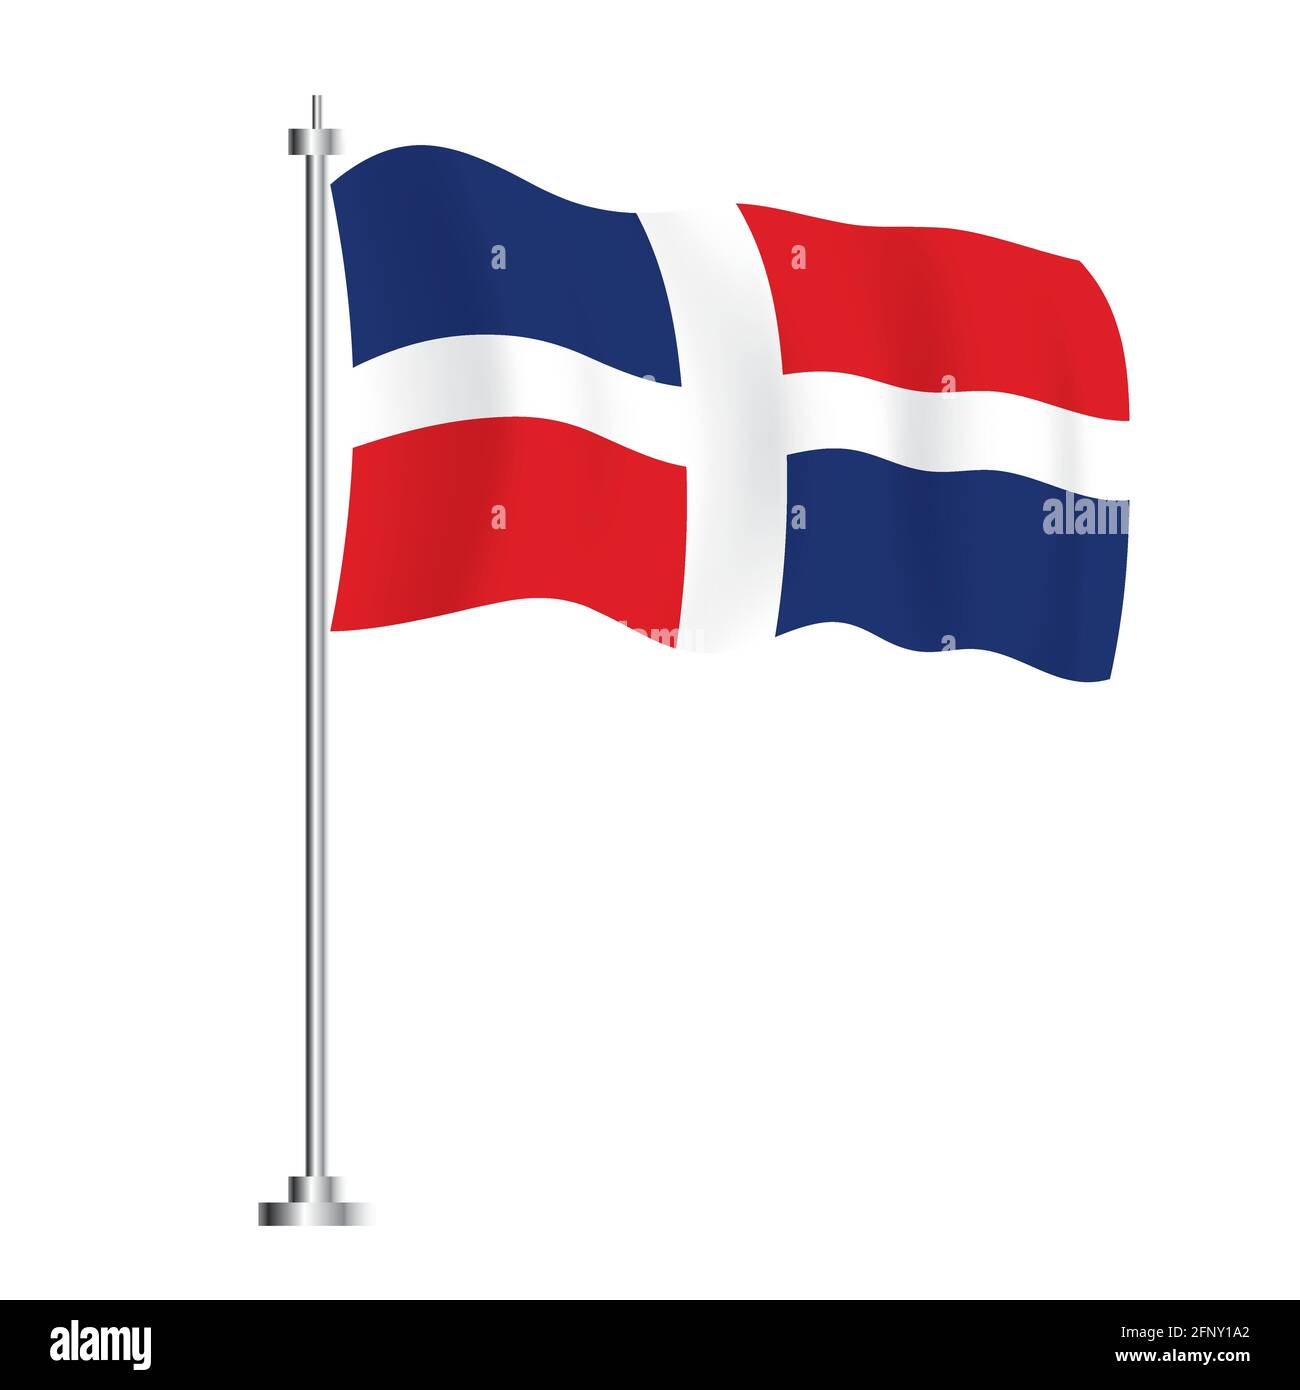 Dominikanische Republik Flagge. Isolierte Wellenfahne des Landes der Dominikanischen Republik. Vektorgrafik. Unabhängigkeitstag. Stock Vektor